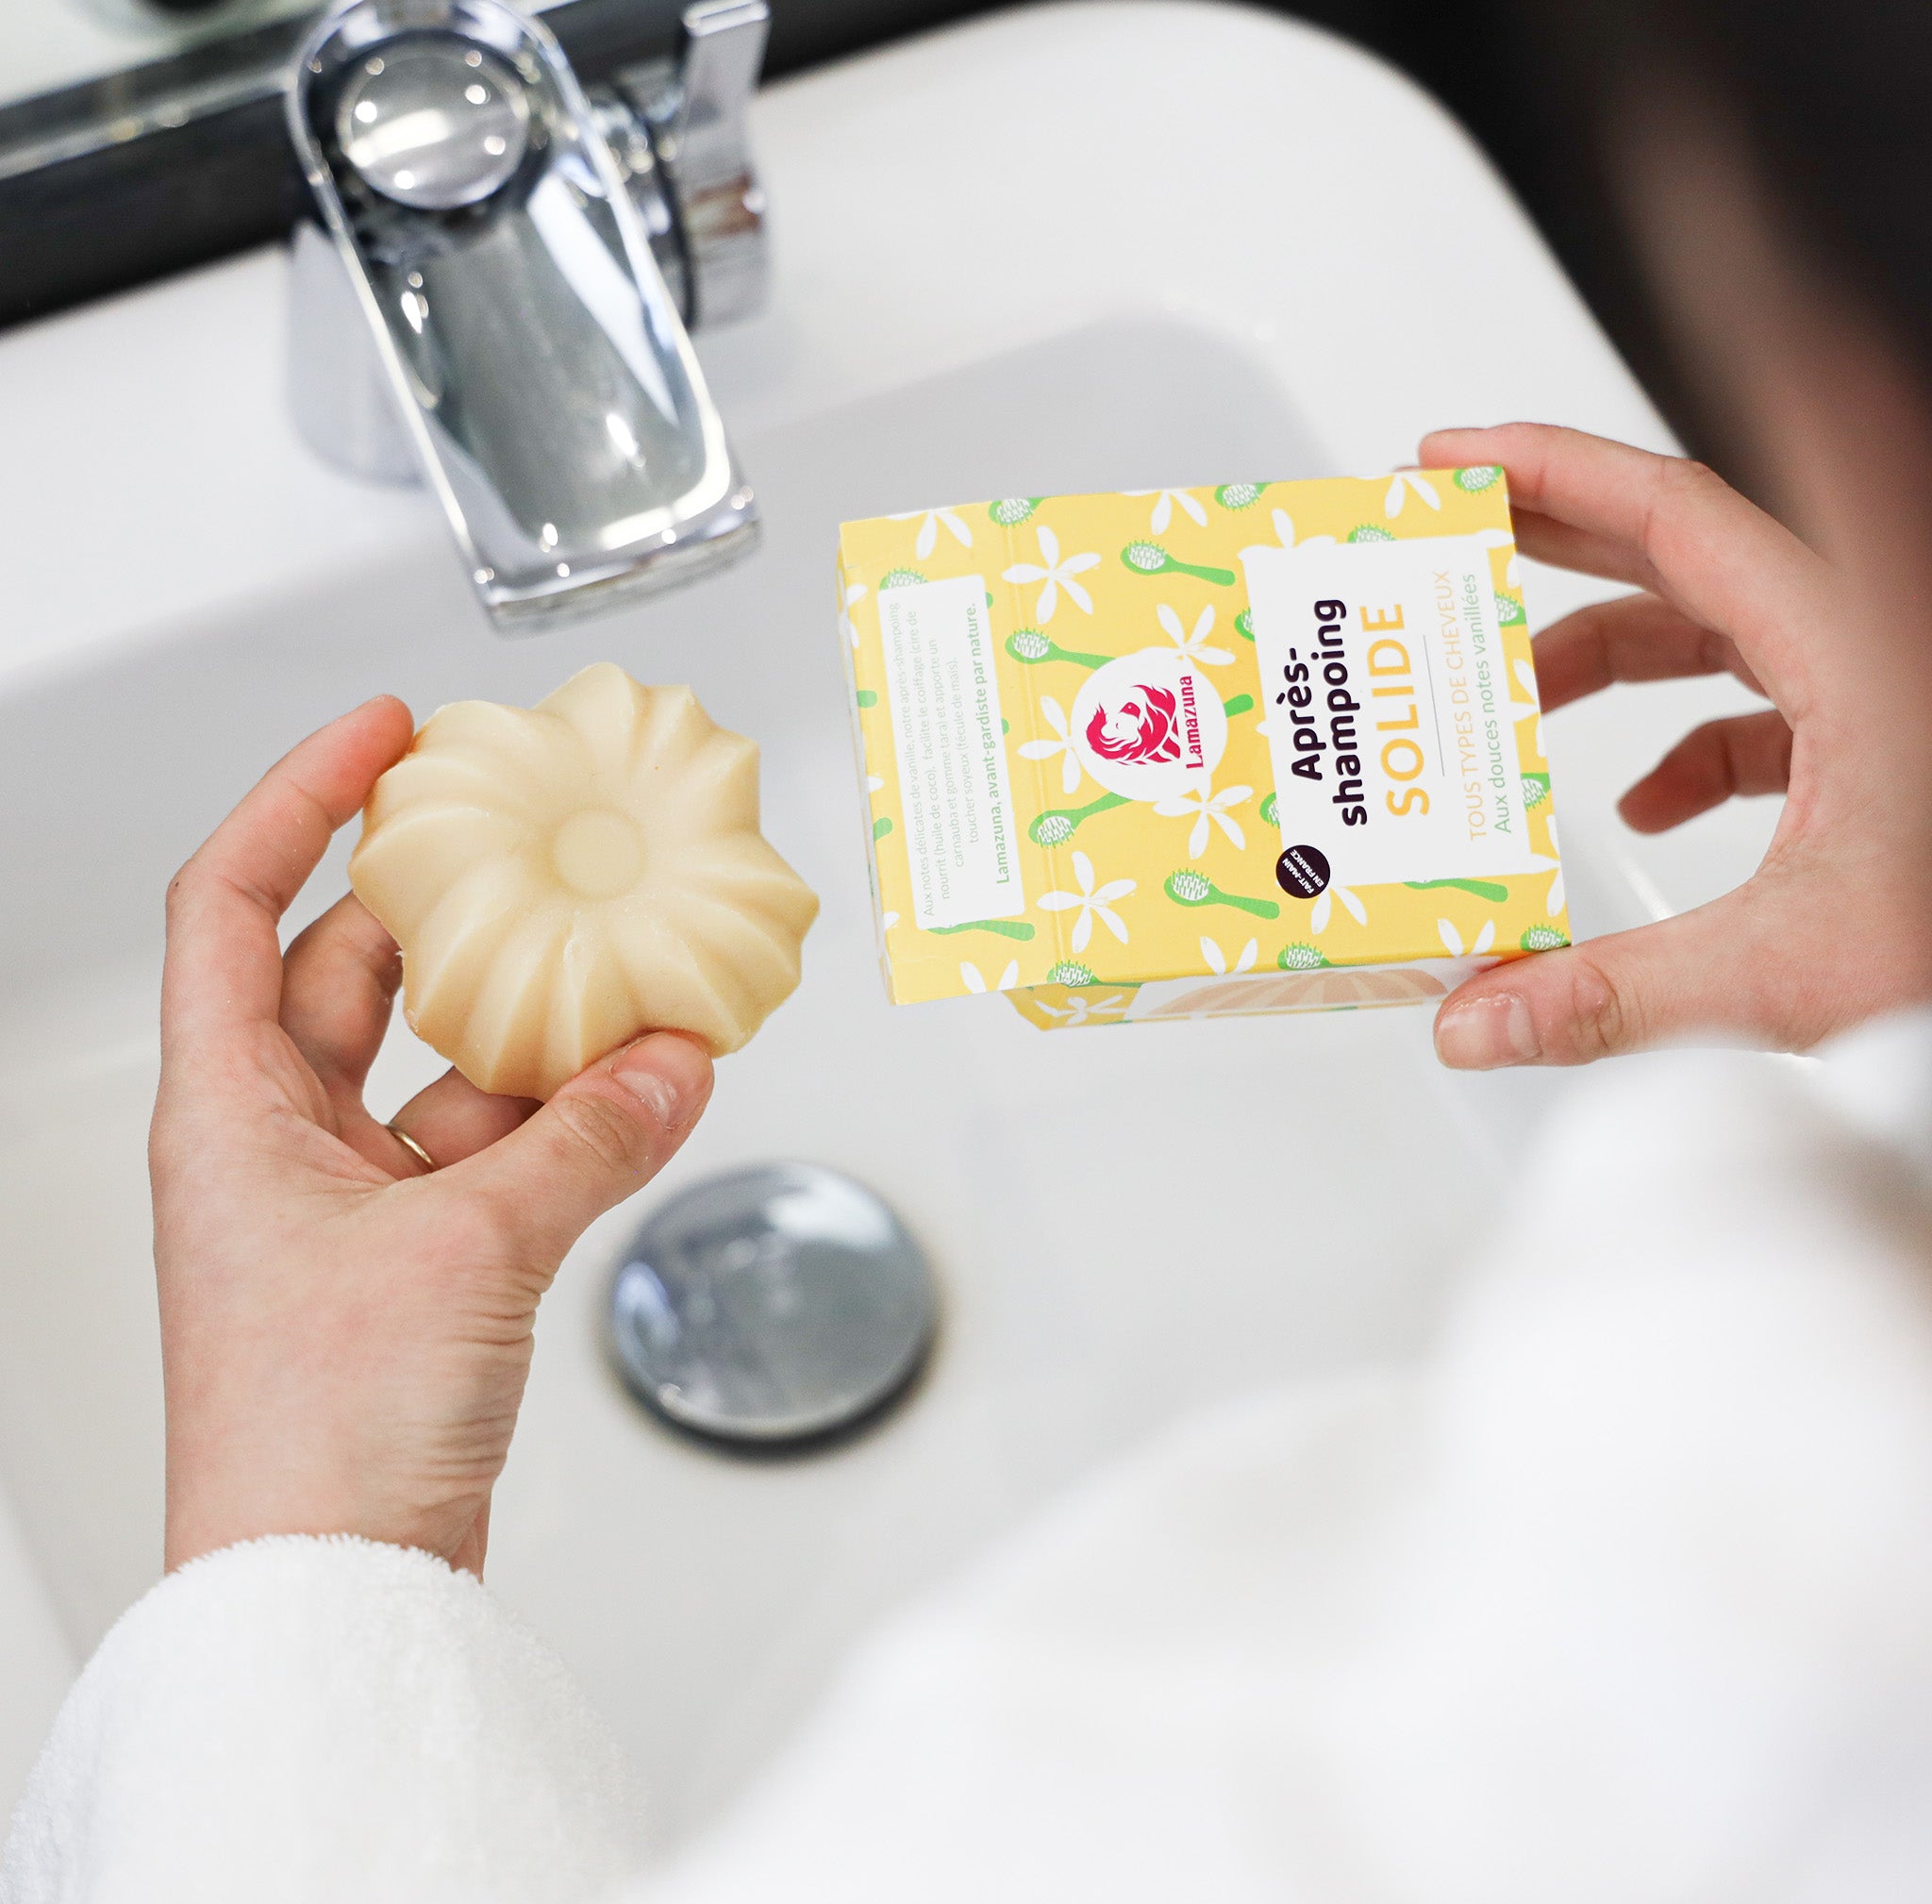 Après-shampoing de la marque Lamazuna, senteur vanille avec son packaging jaune au dessus d'un évier